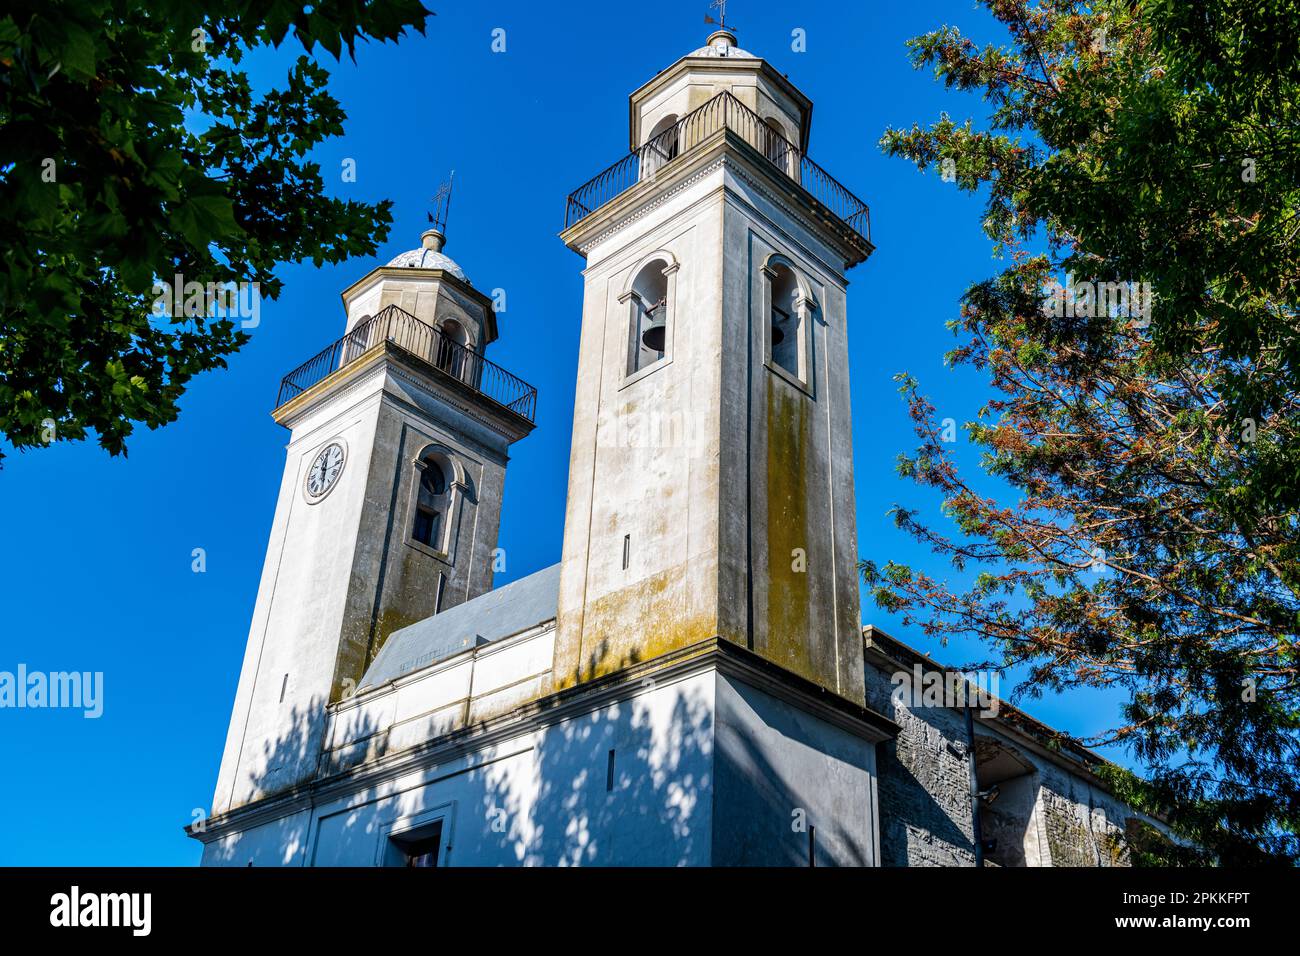 Basilica del Santisimo Sacramento, Colonia del Sacramento, UNESCO World Heritage Site, Uruguay, South America Stock Photo